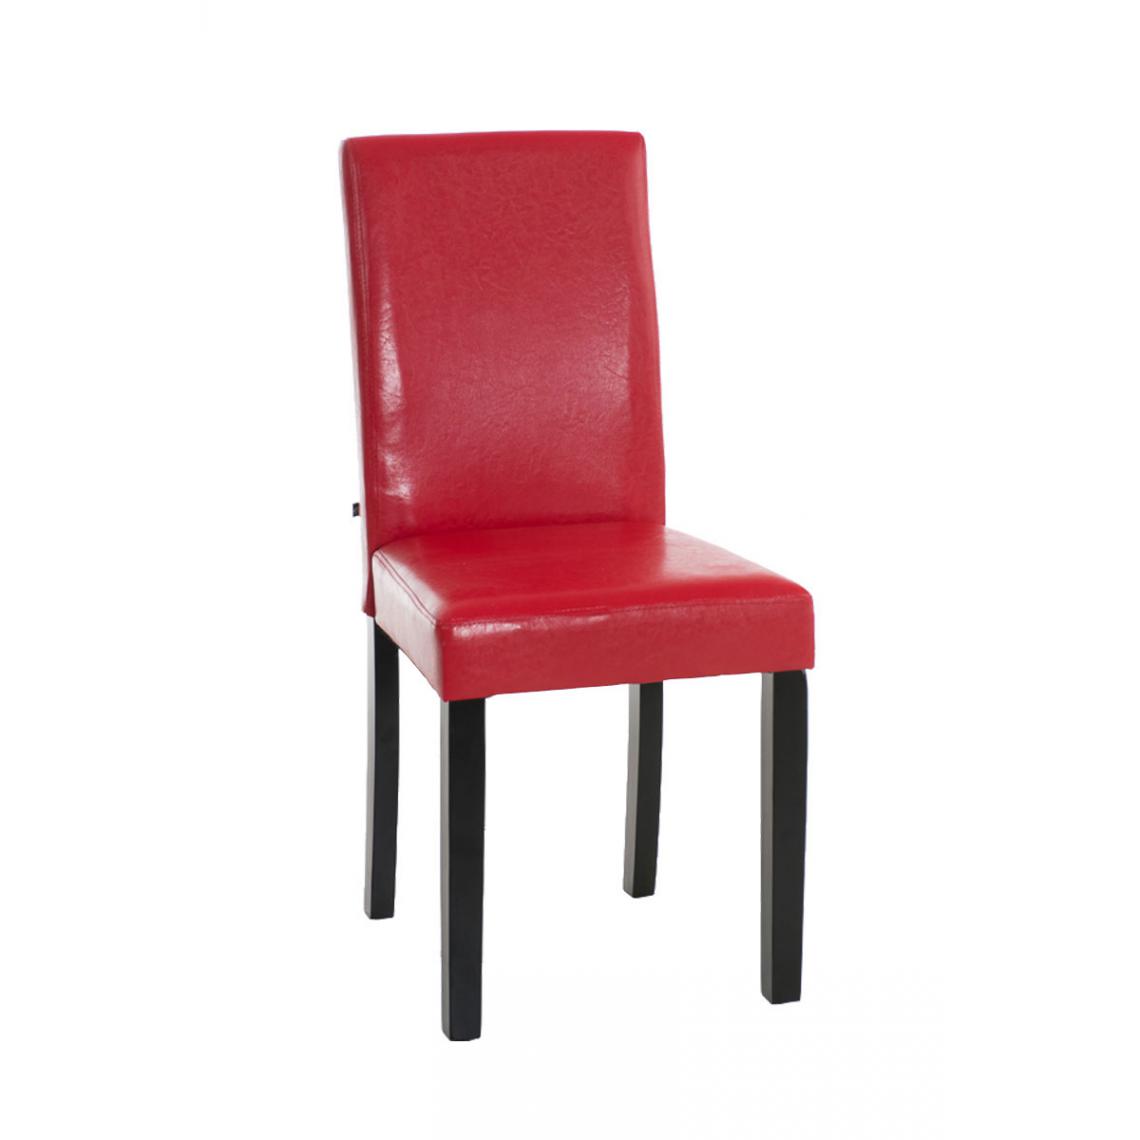 Icaverne - Splendide Chaise de salle à manger gamme Rabat noir couleur rouge - Chaises